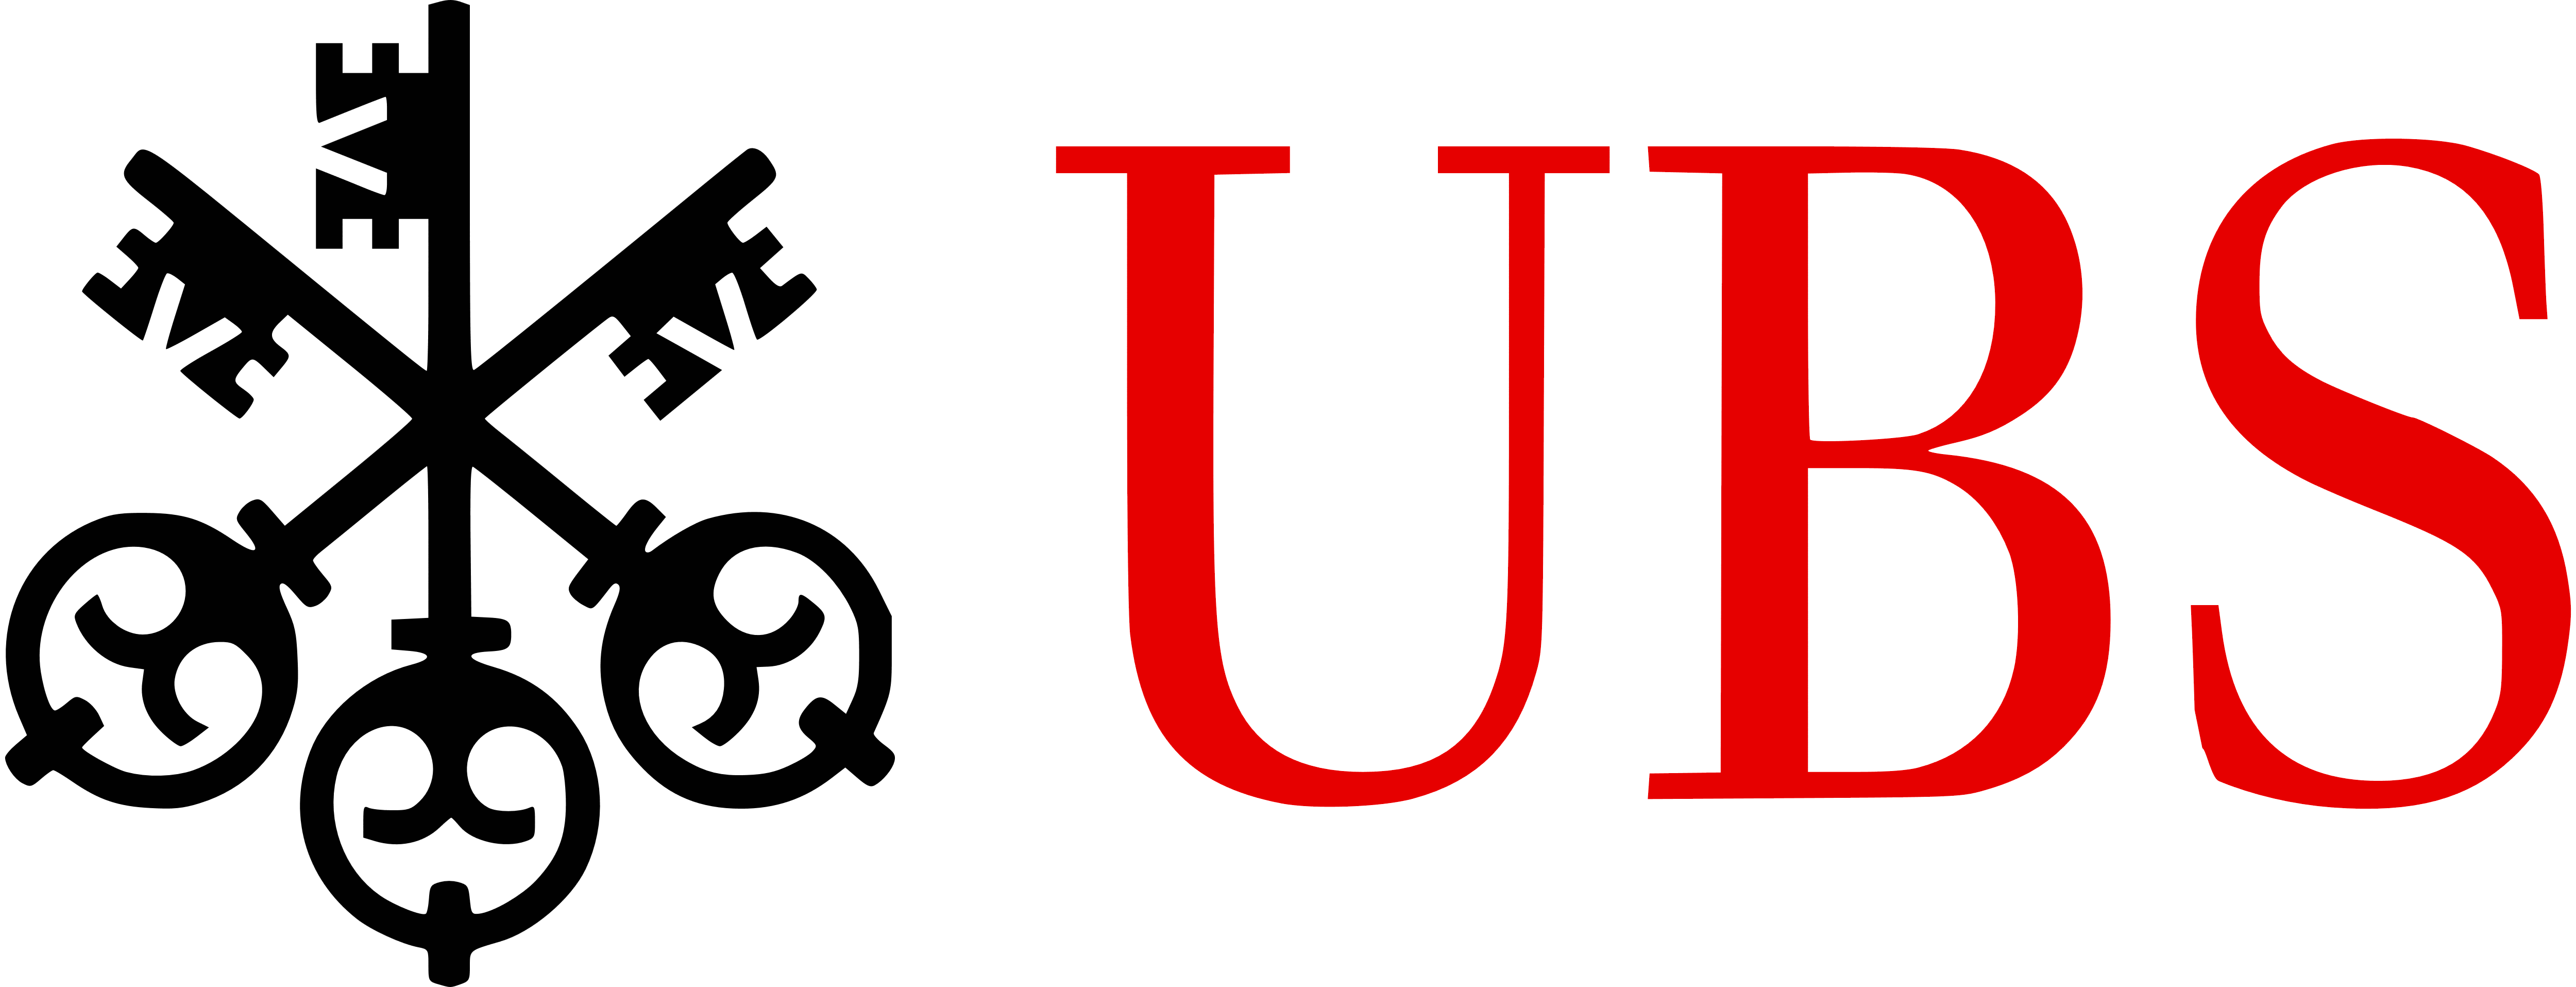 UBS Logo - UBS – Logos Download